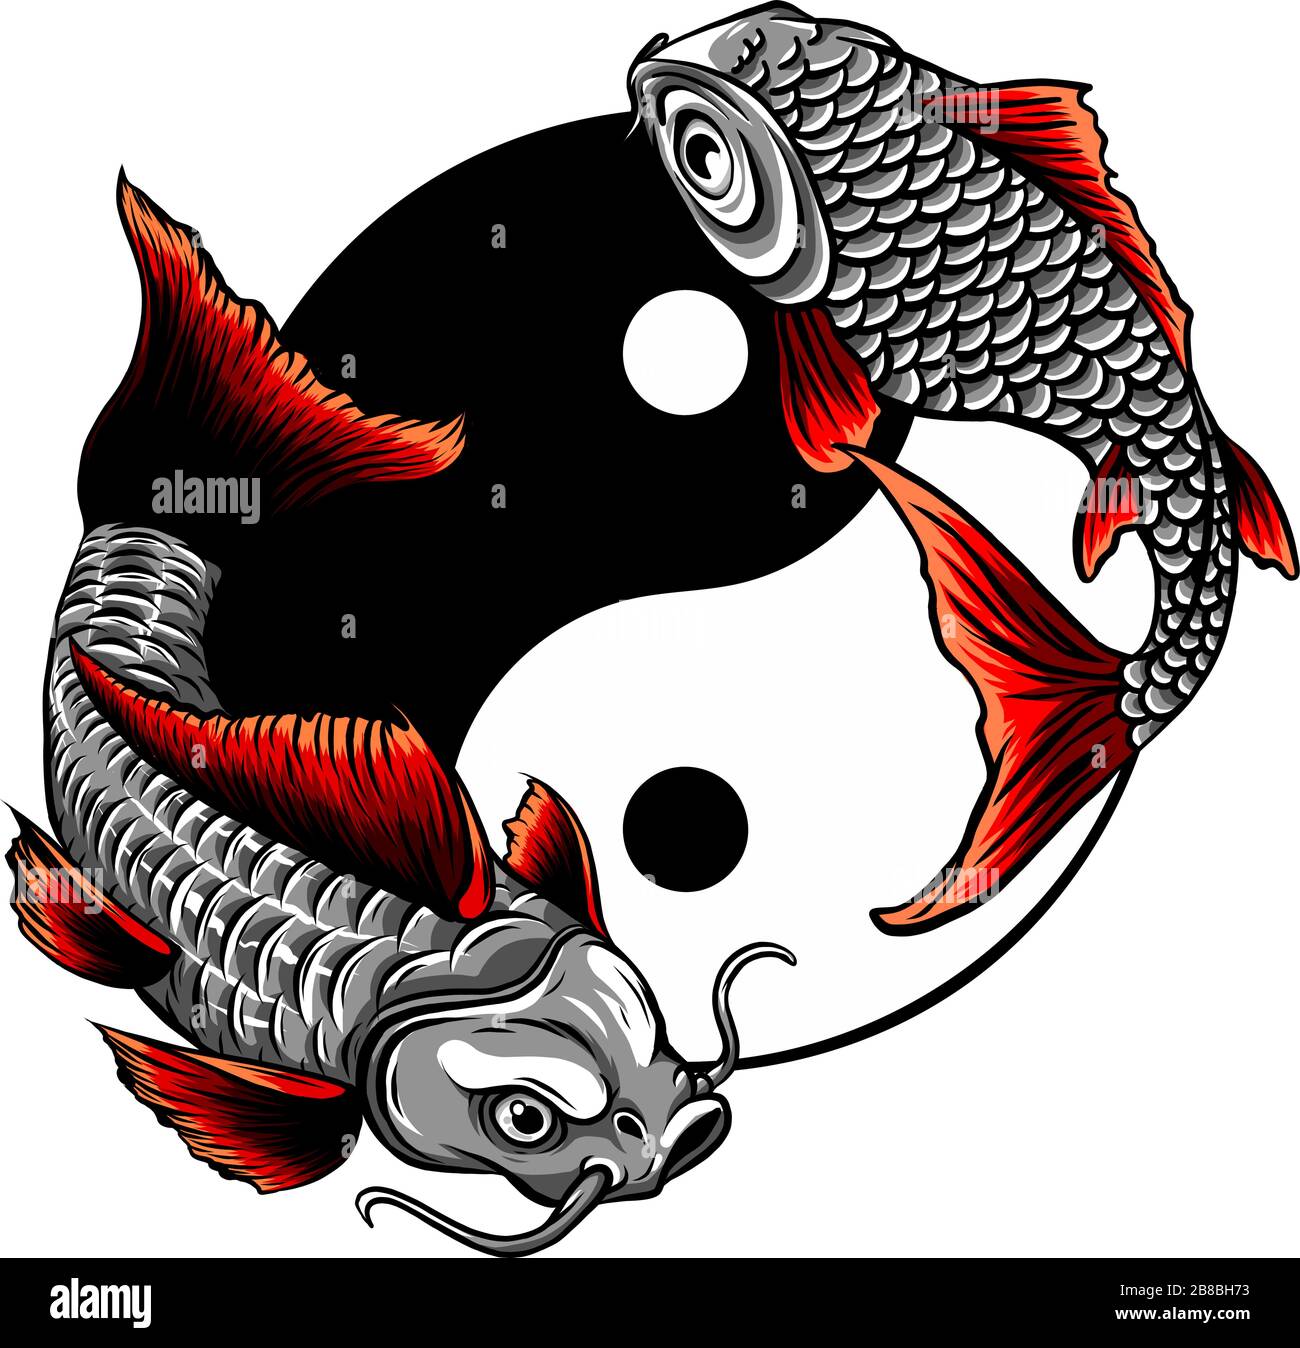 Fish Yin Yang logo vector illustration design Stock Vector